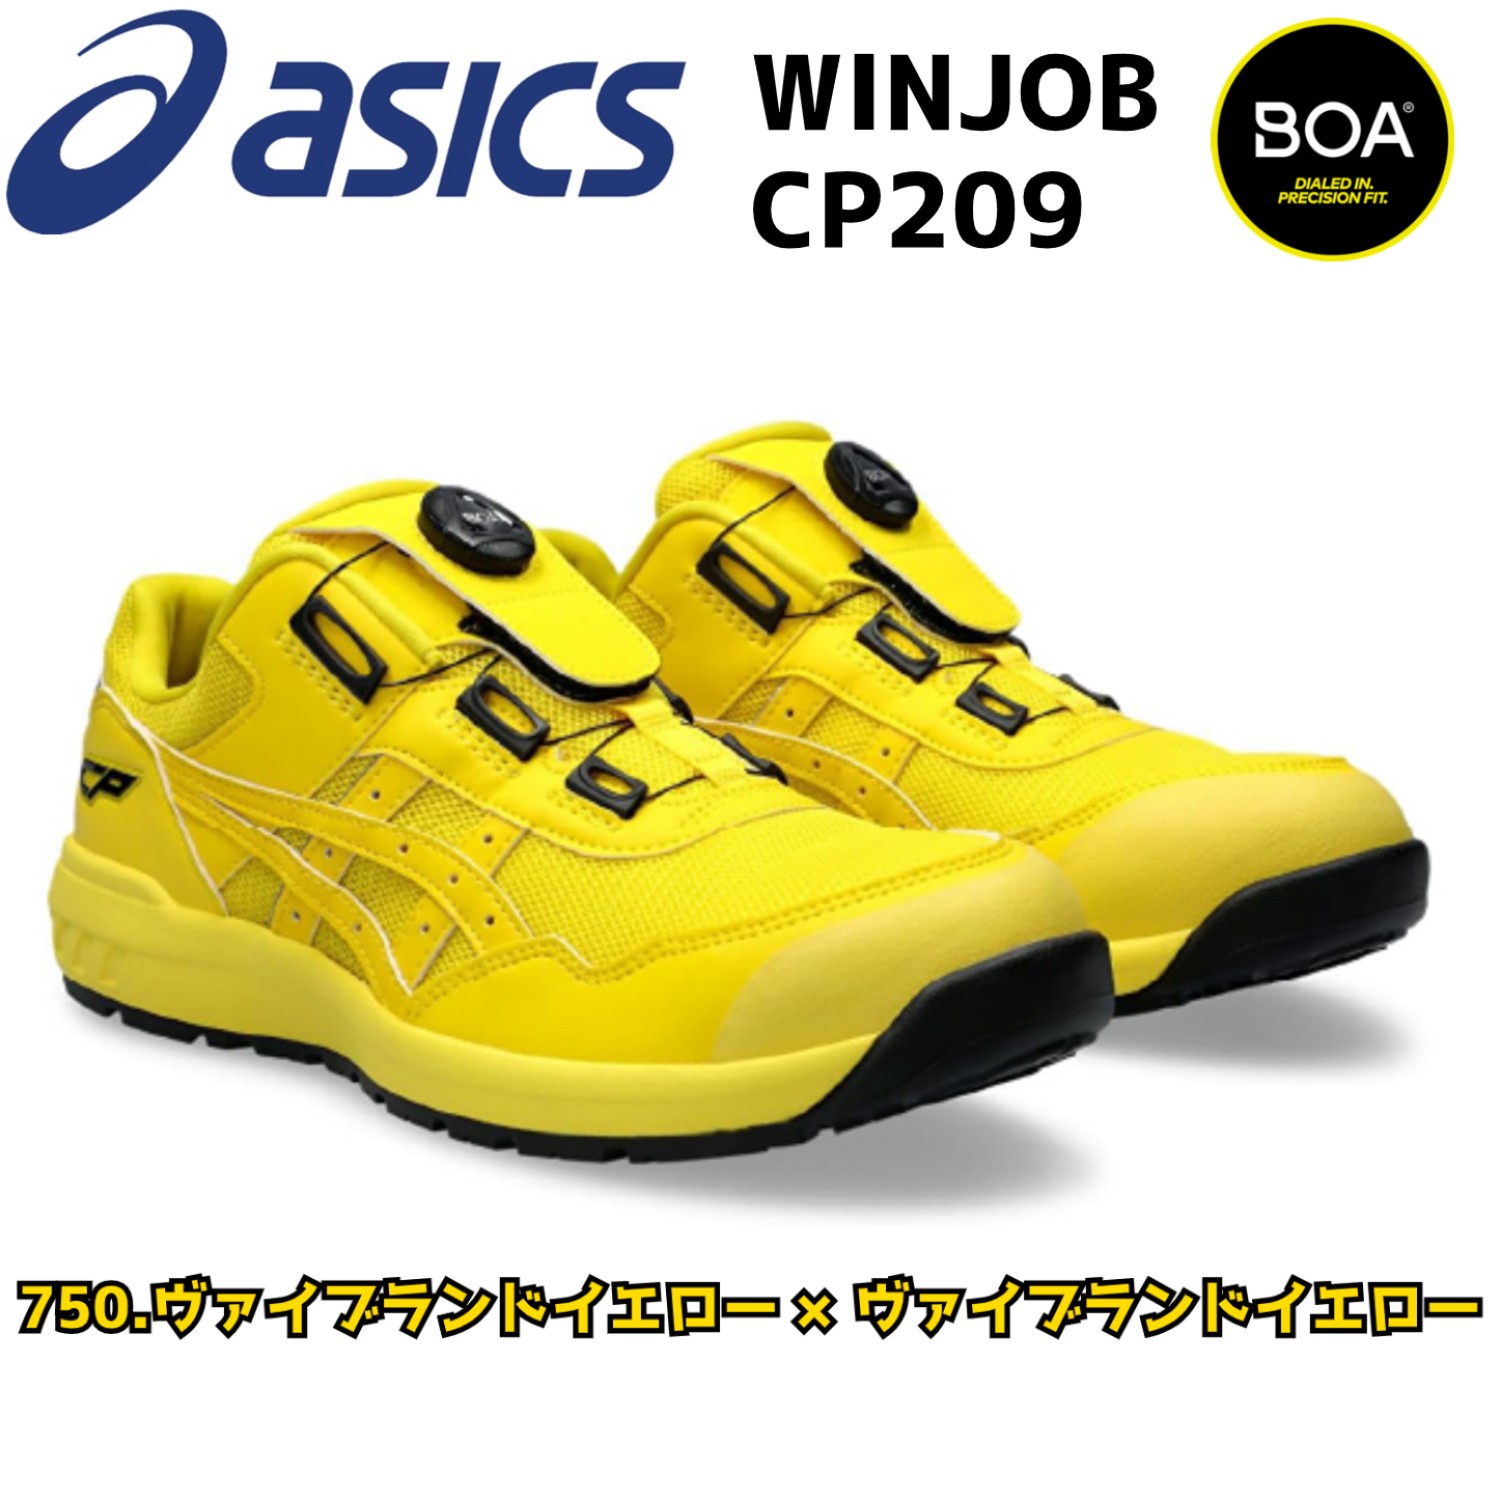 アシックス 安全靴 限定カラー asics BOA WINJOB CP209-750 ローカット 耐...